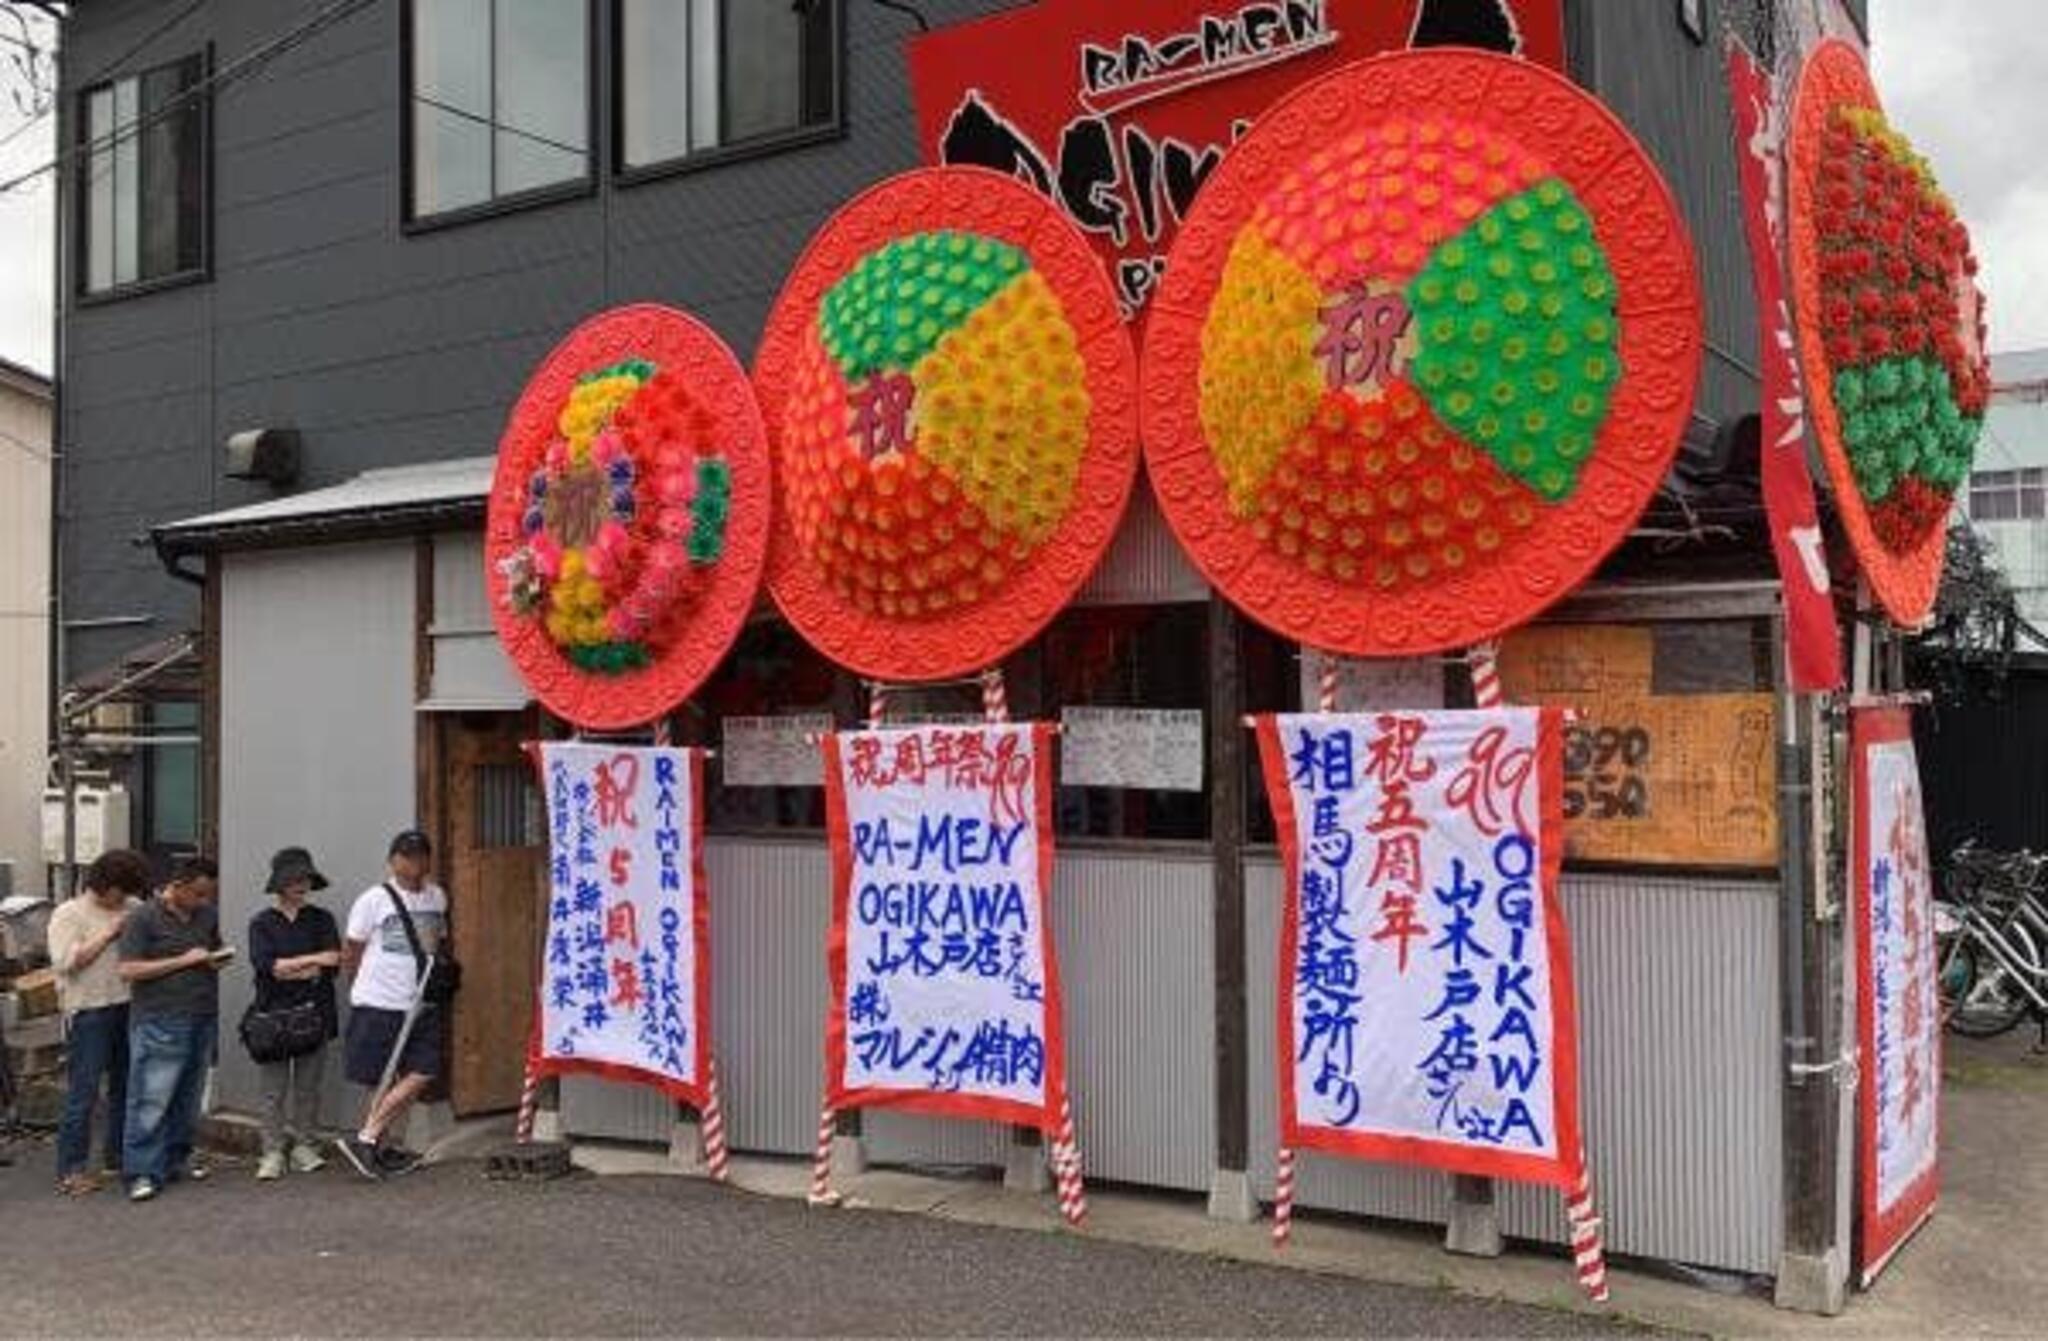 RA-MEN OGIKAWA 山木戸店の代表写真1